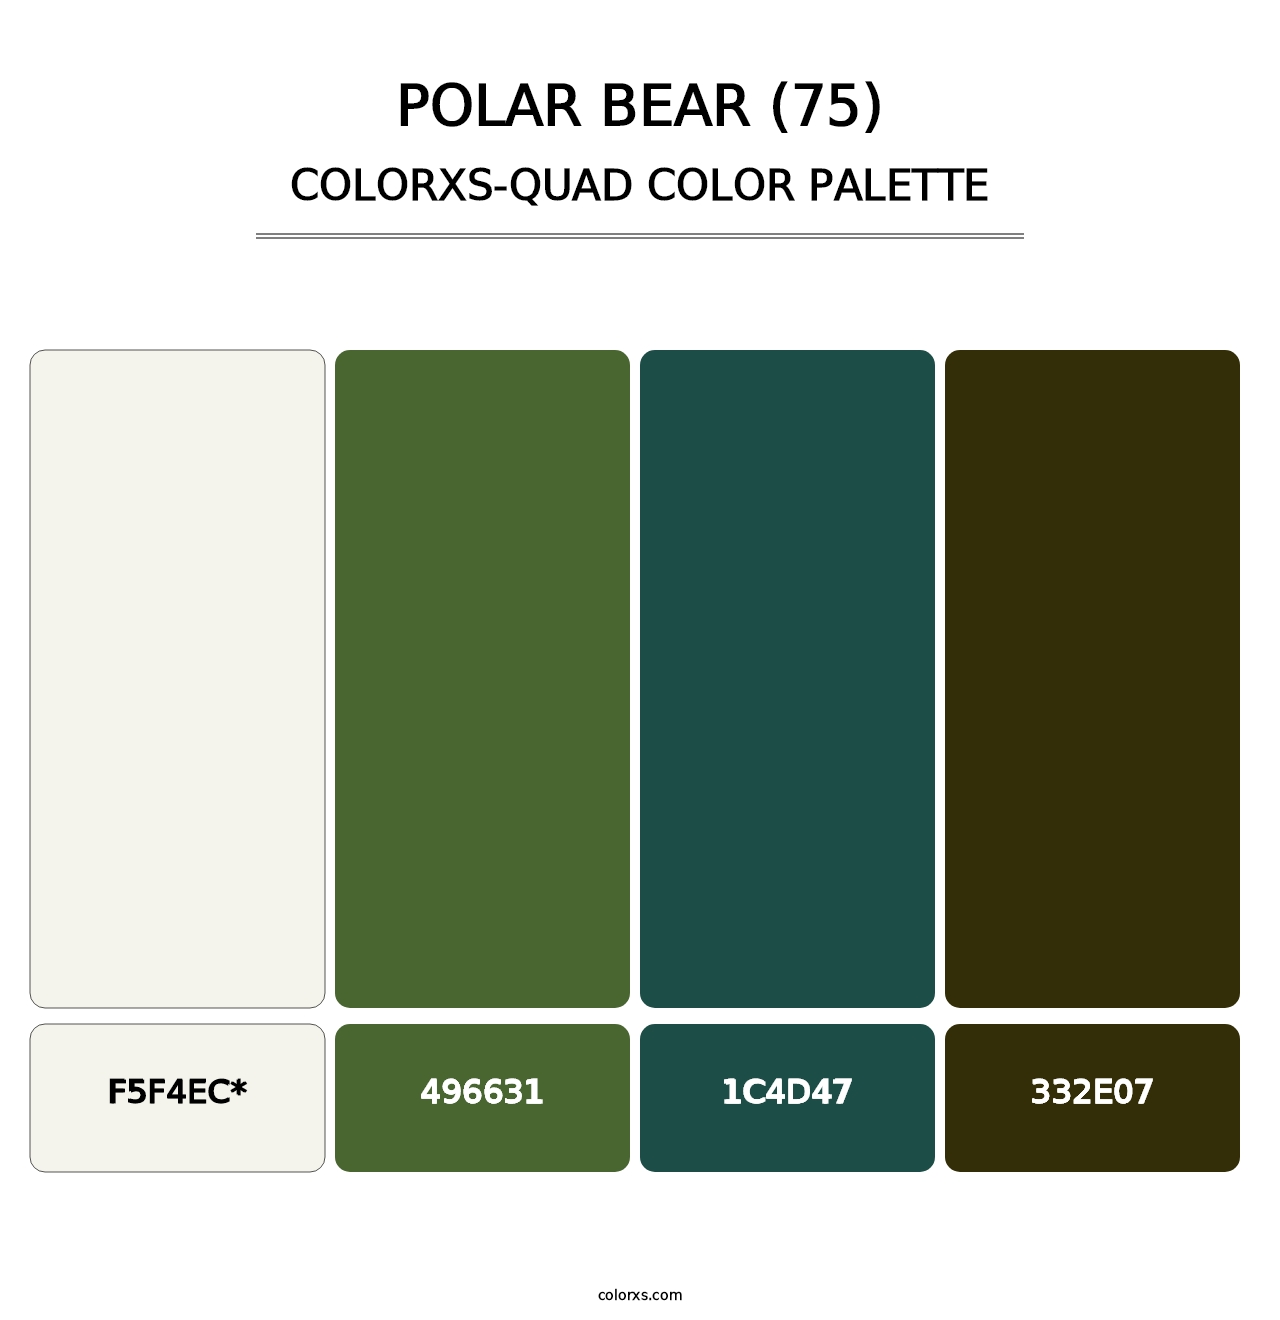 Polar Bear (75) - Colorxs Quad Palette